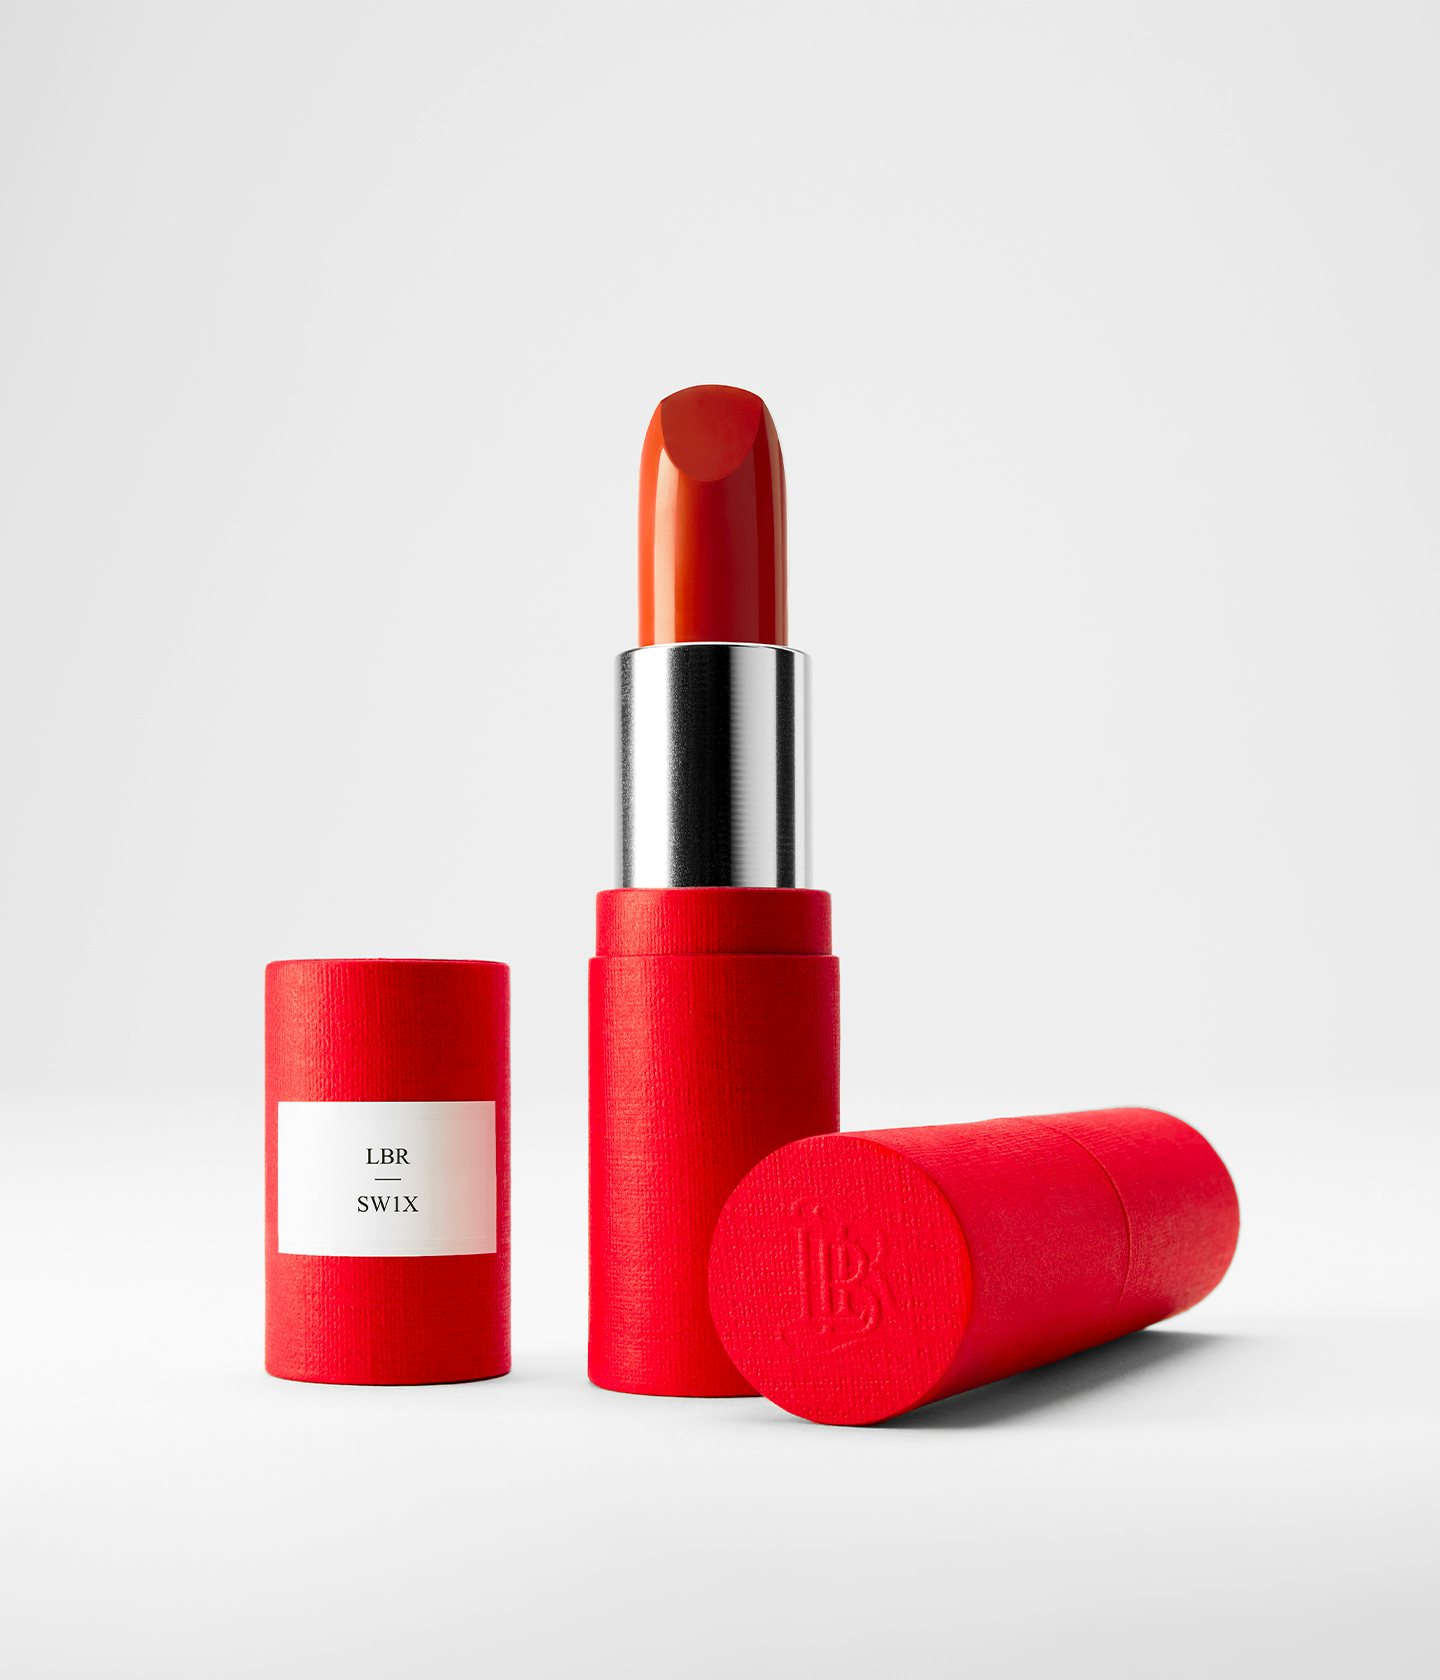 La bouche rouge SW1X lipstick in the red paper case